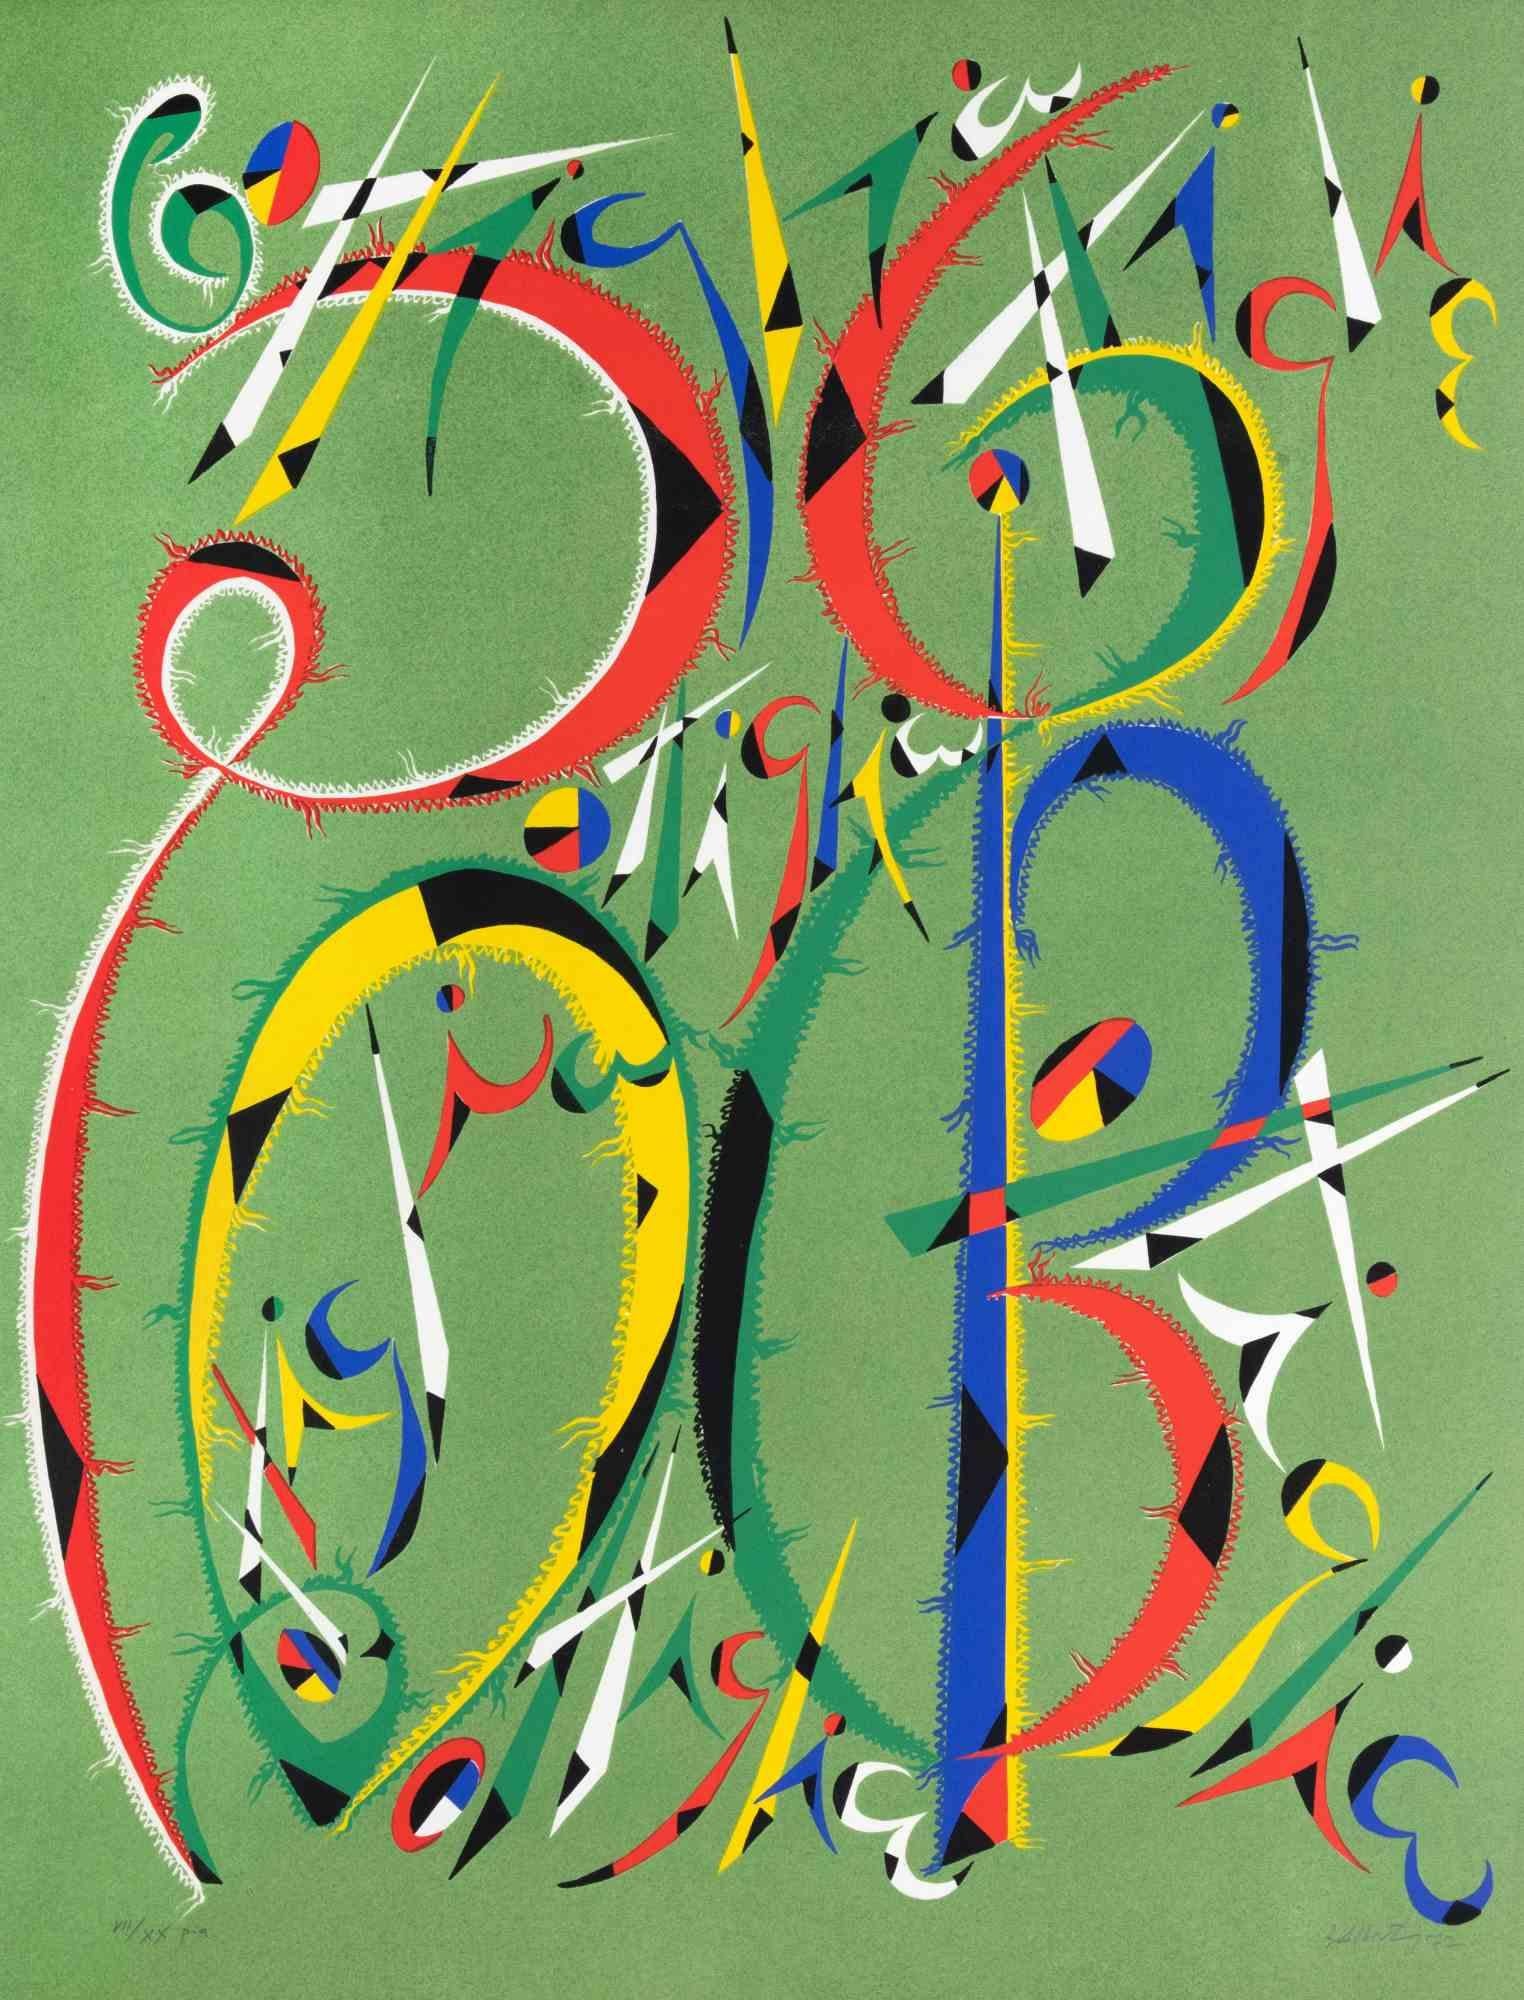 Der Buchstabe B von Rafael Alberti, aus der Serie Alphabet, ist eine Lithographie, die 1972 von Rafael Alberti realisiert wurde.

Handsigniert und datiert am unteren rechten Rand. Links unten nummeriert.

Ausgabe von VII/XX

Das Kunstwerk stellt den